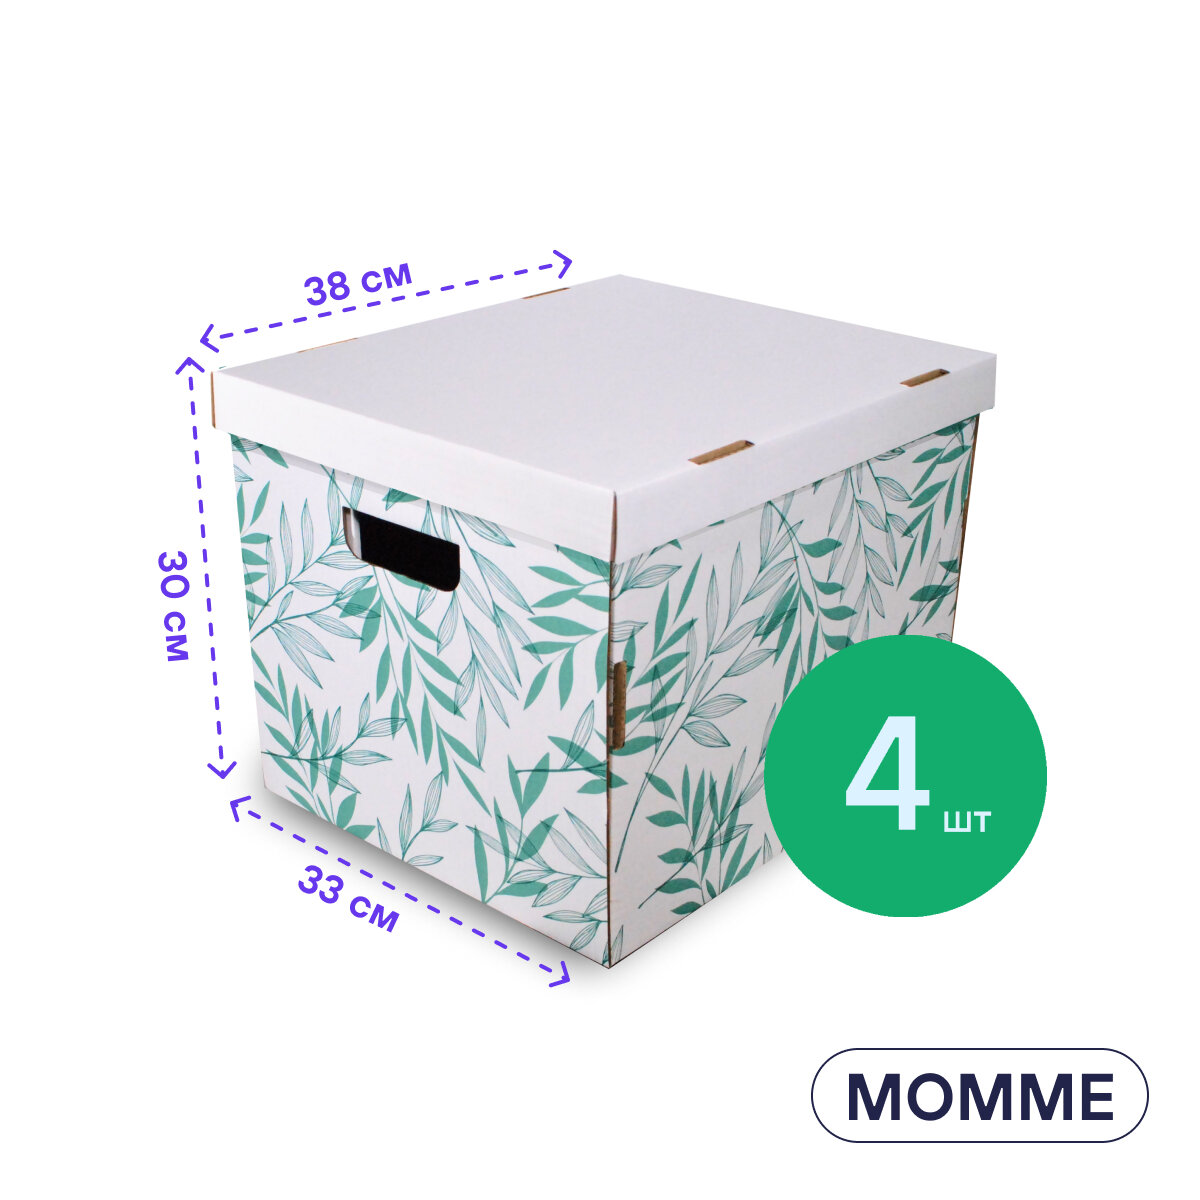 Коробка для хранения вещей и игрушек BOXY момме 38х33х30 см, зеленый короб с белой крышкой, гофрокартон, в упаковке 4 шт